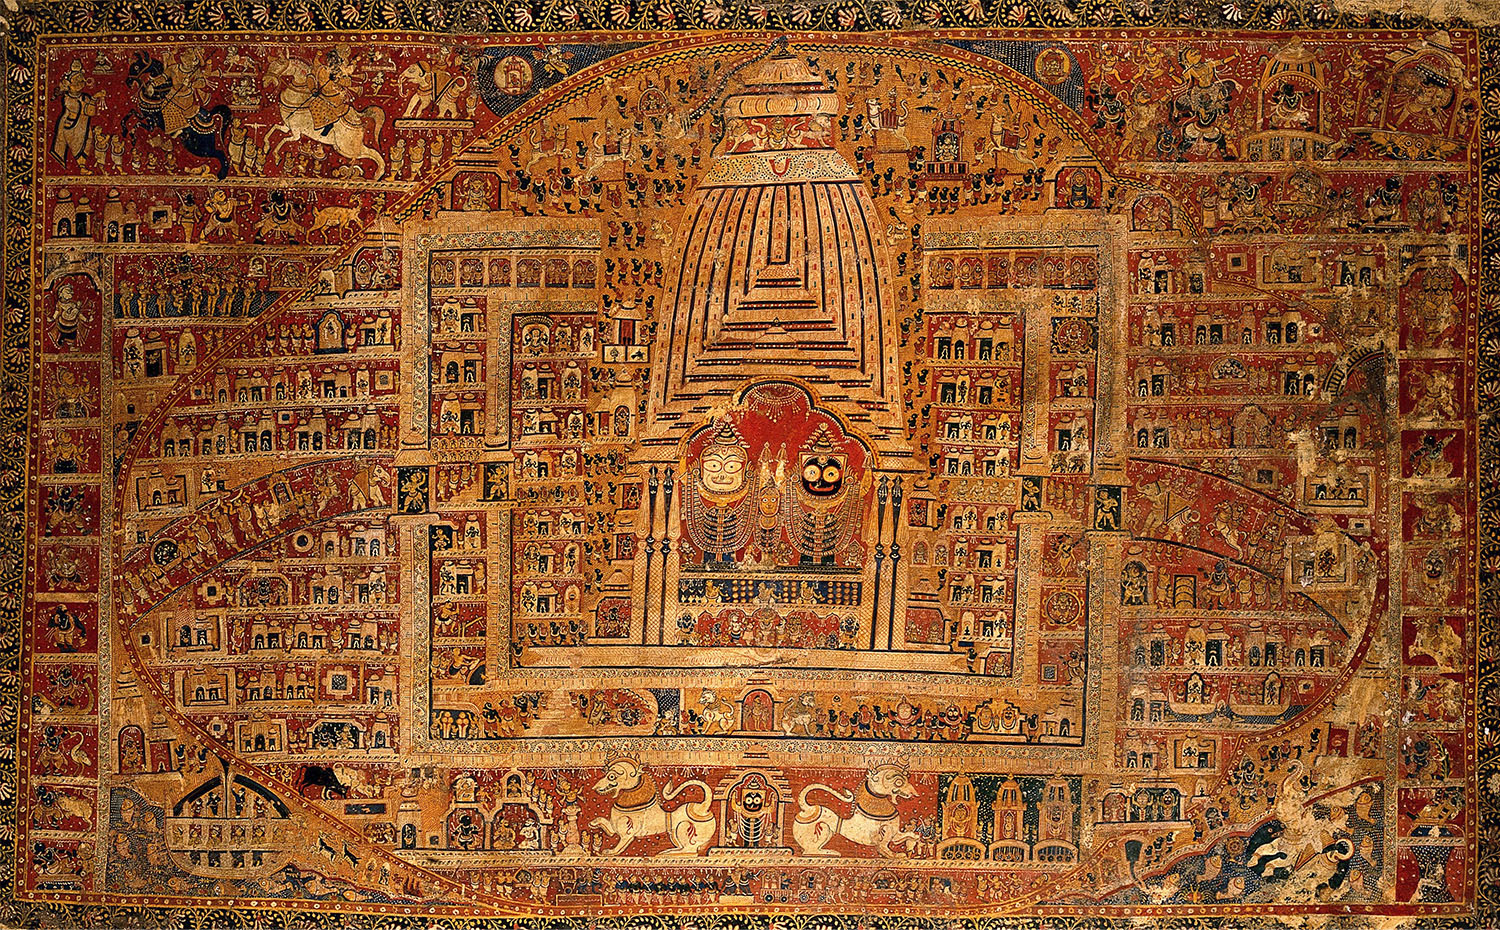 A Pattachitra depicting the Jagannatha Temple, Puri, its principal deities Balarama, Subhadra and Jagannatha at the centre.